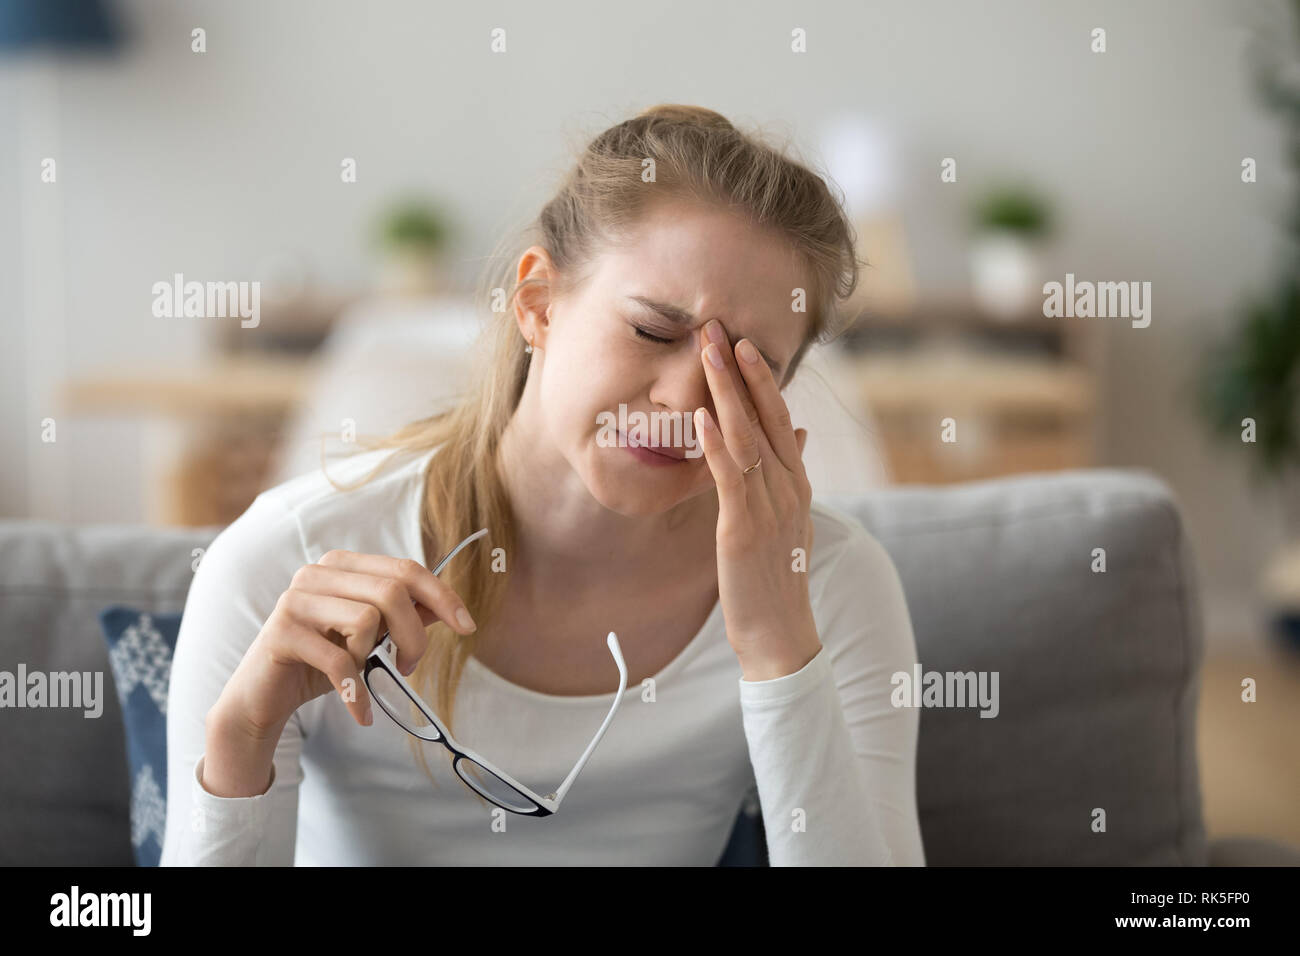 Tired teen girl rubbing eyes feeling eyestrain taking off glasses Stock Photo